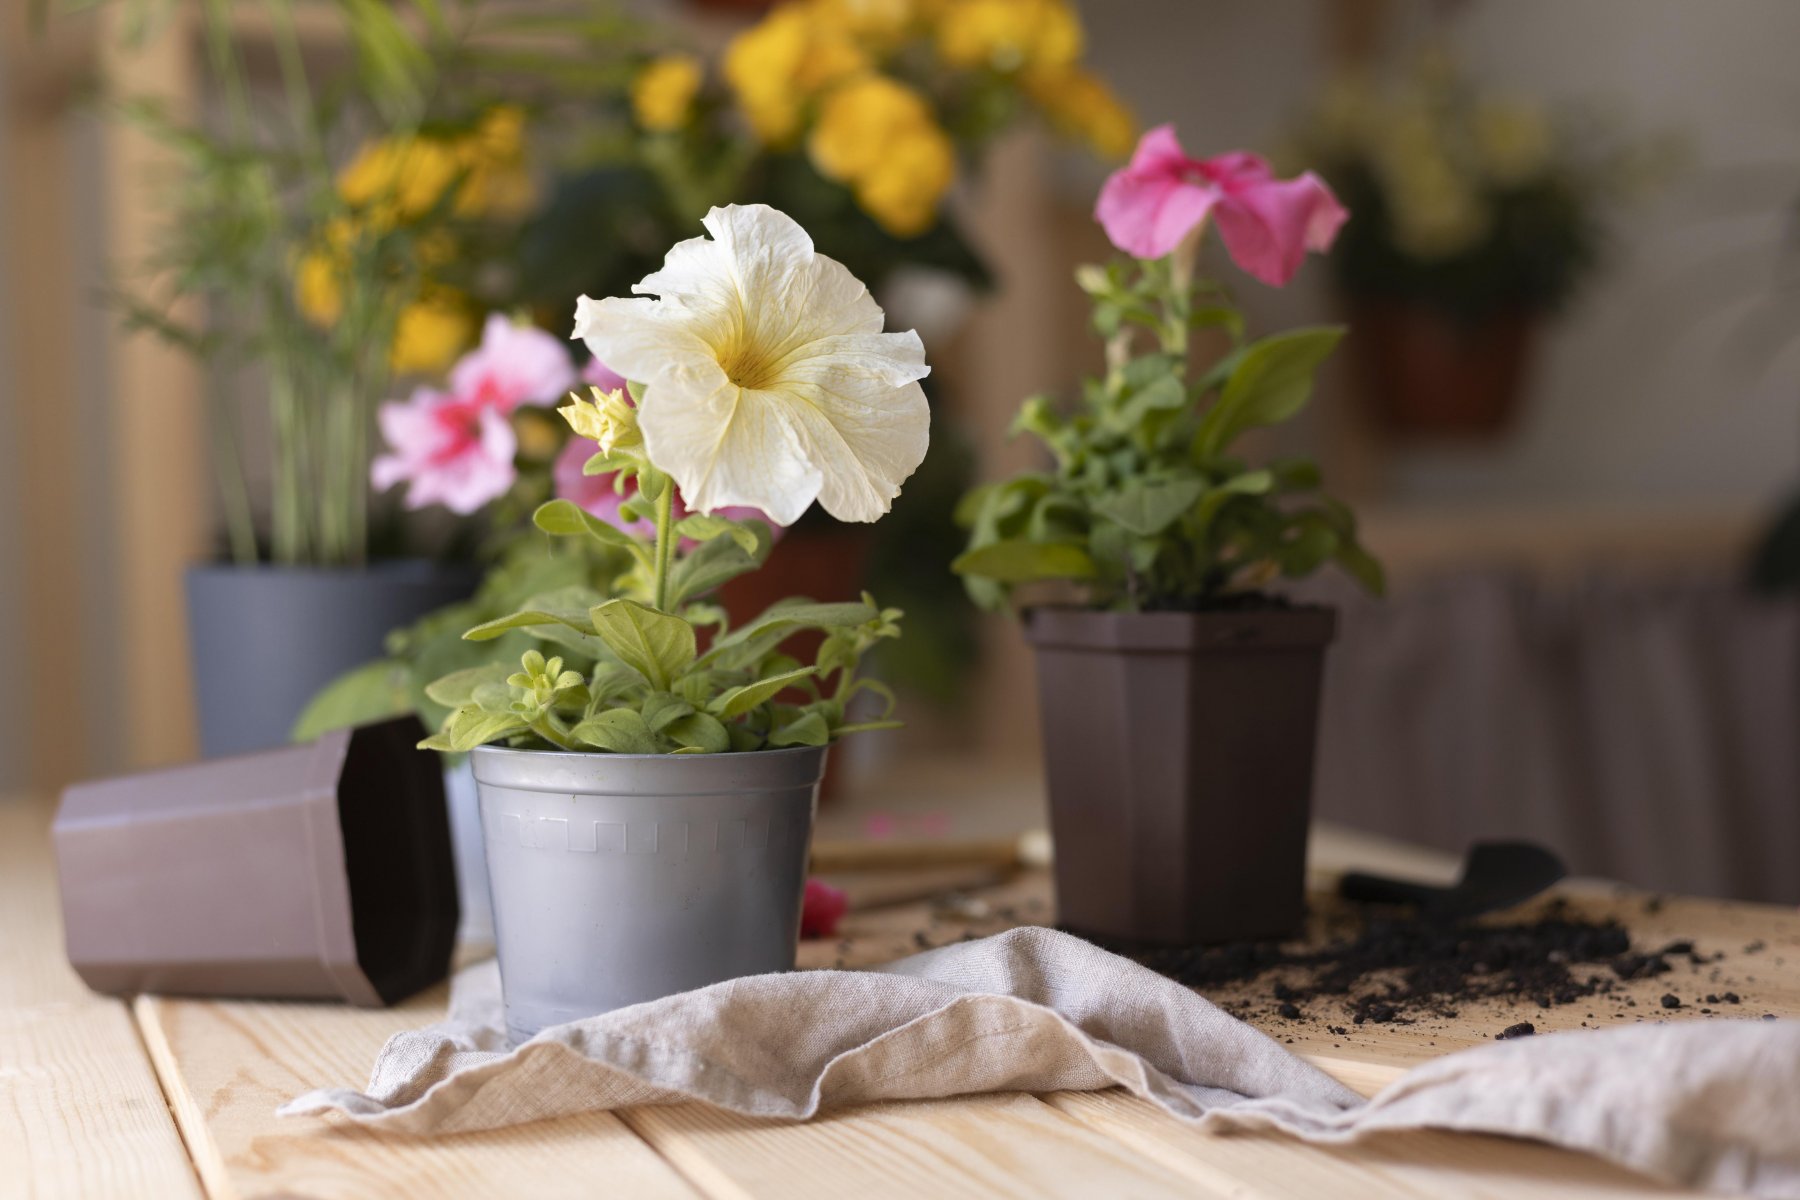 Флорист: некоторые комнатные растения лучше убирать с подоконника летом